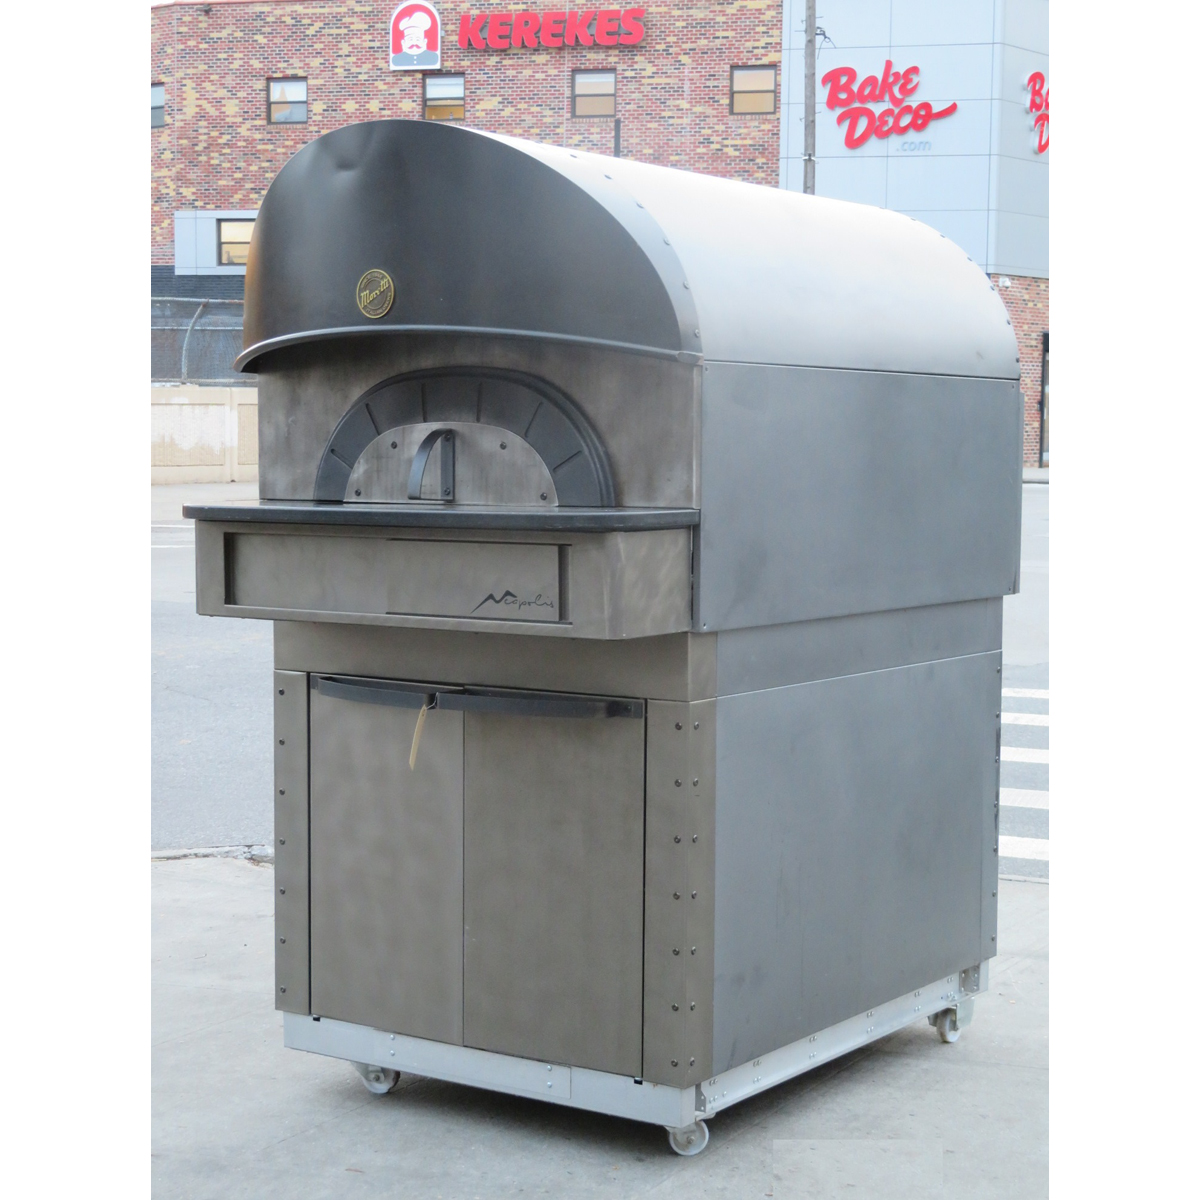 Moretti Forni NEAPOLIS-6 Electric Pizza Oven, Used Excellent Condition